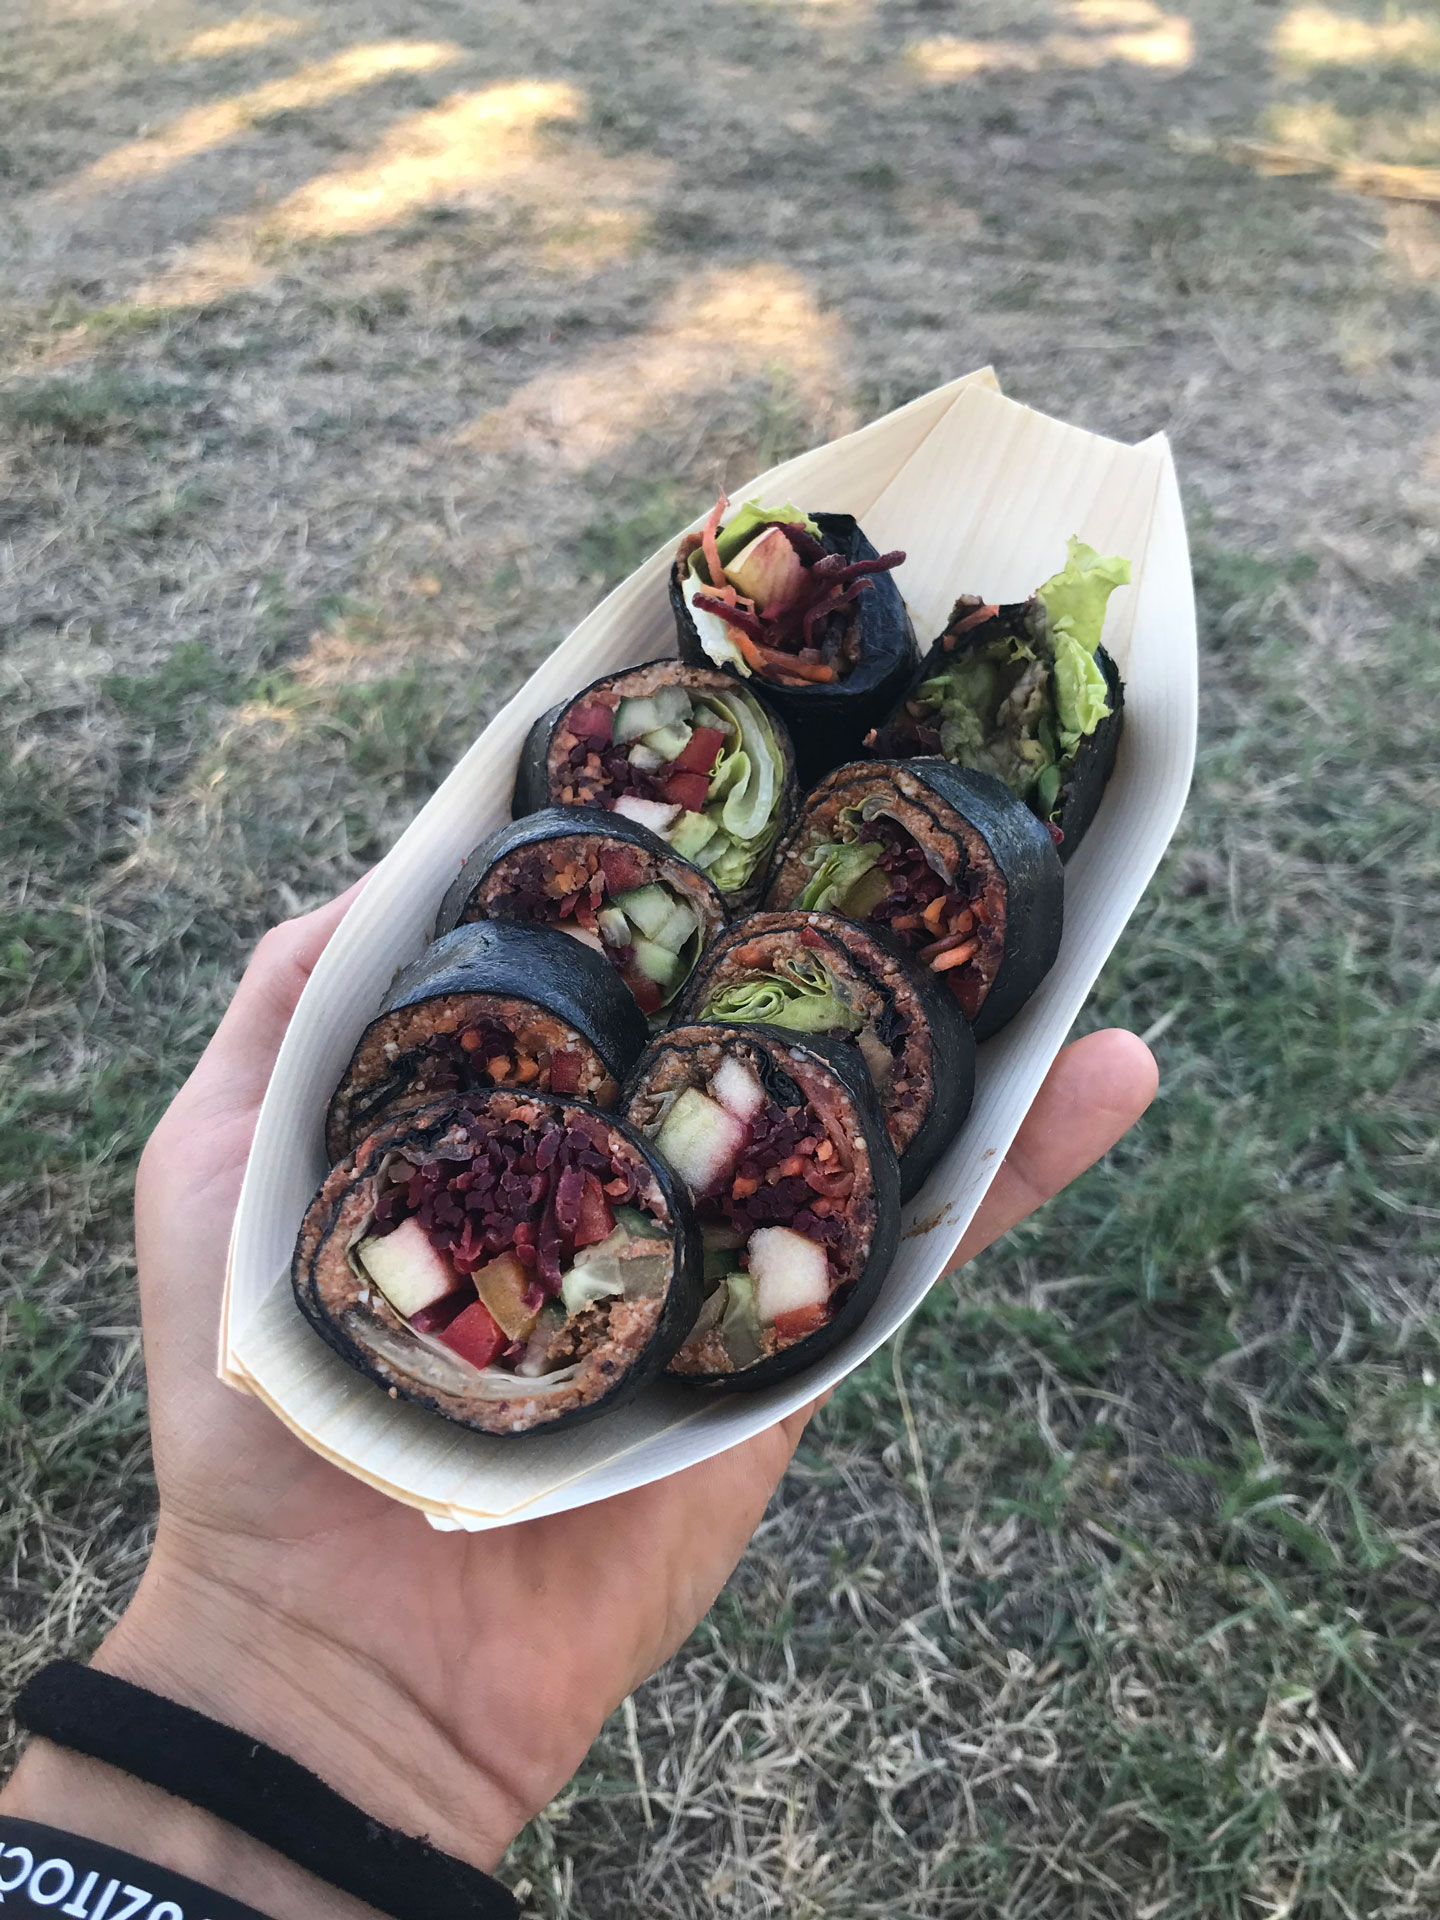 raw vegan sushi by bemba - vegday cerveny kamen